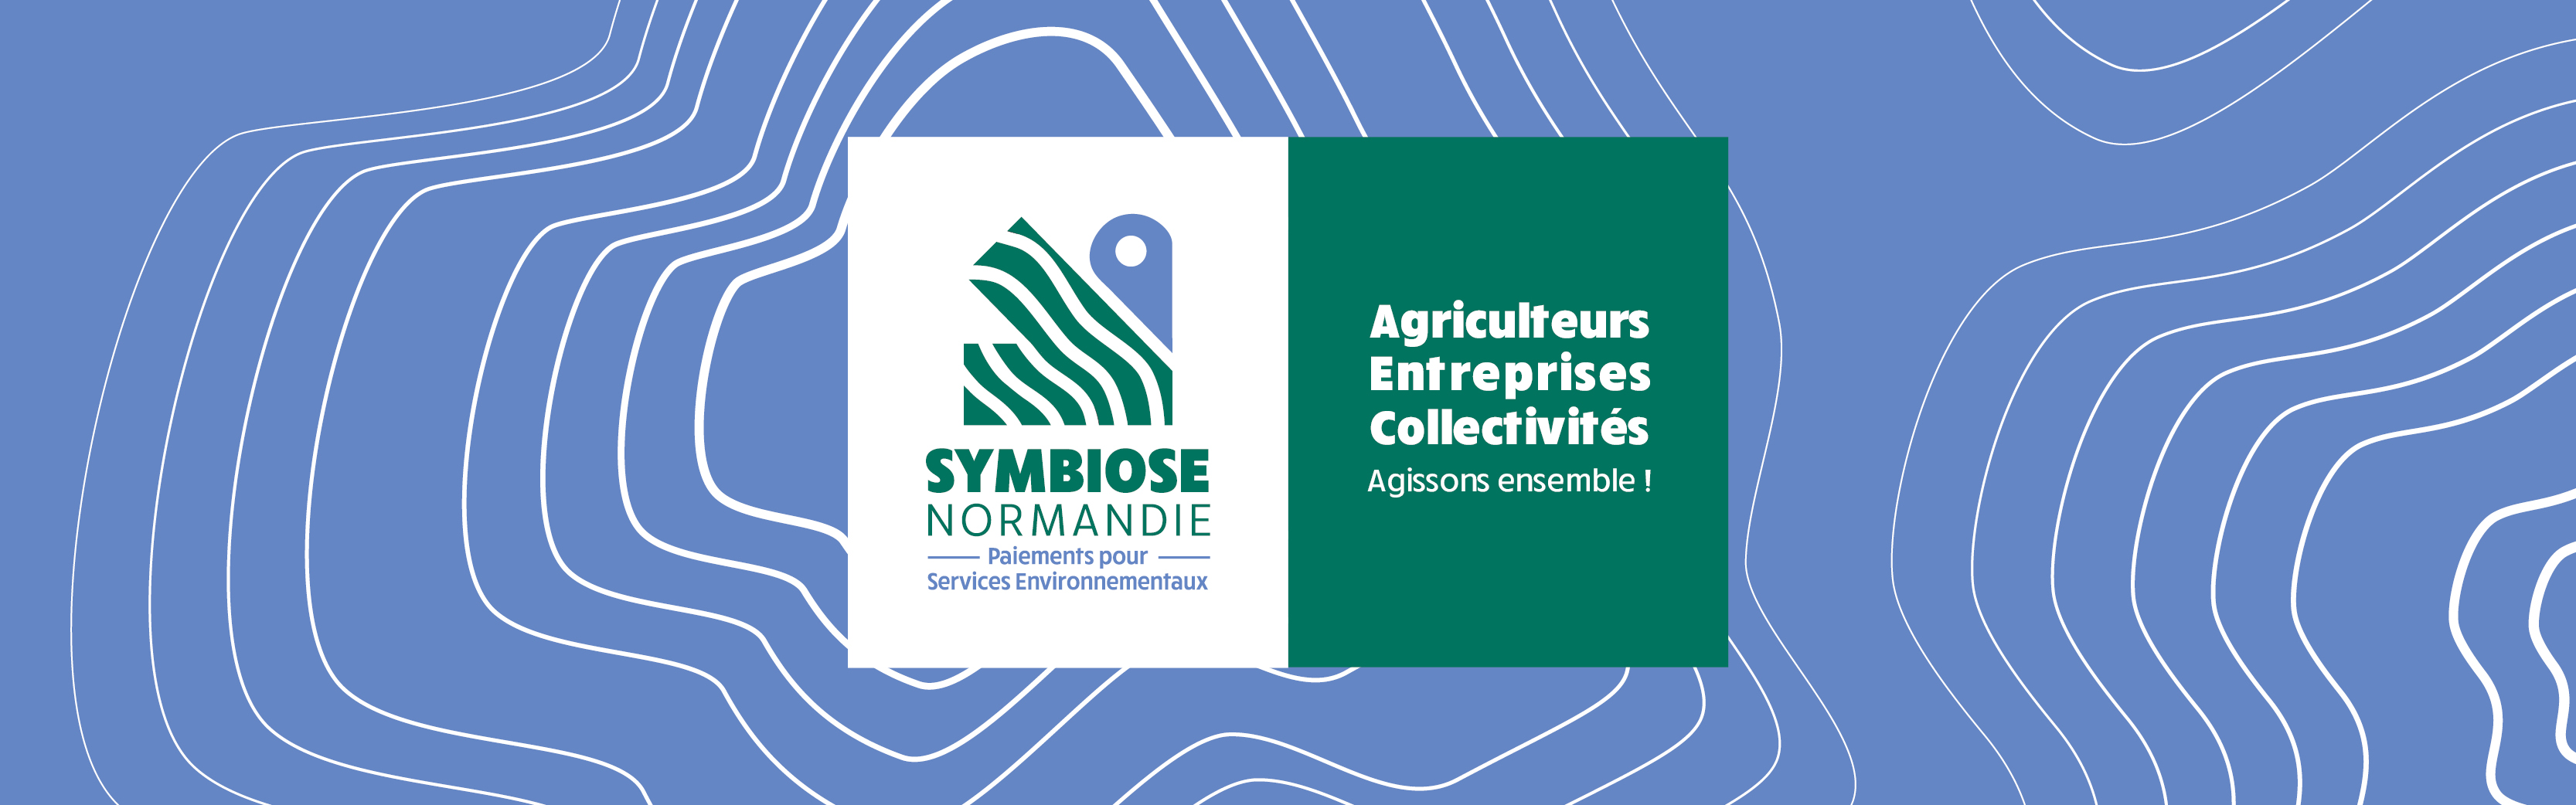 Symbiose Normandie